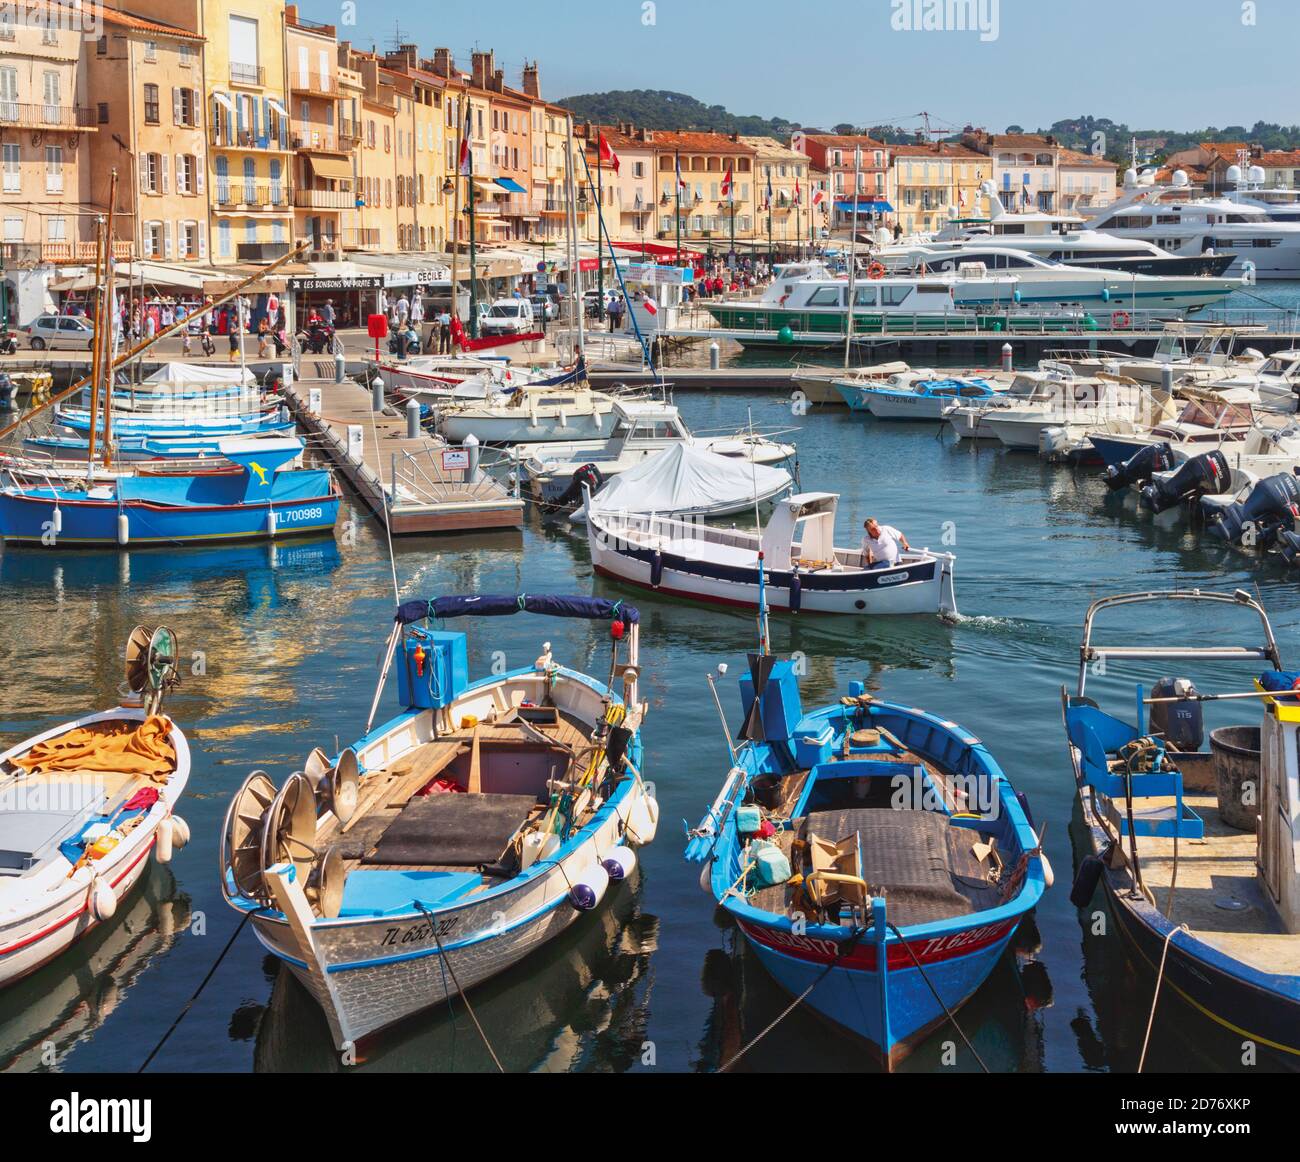 Saint-Tropez, Cote d'Azur, Französische Riviera, Provence, Frankreich. Hafen, Uferpromenade, Promenade. Stockfoto